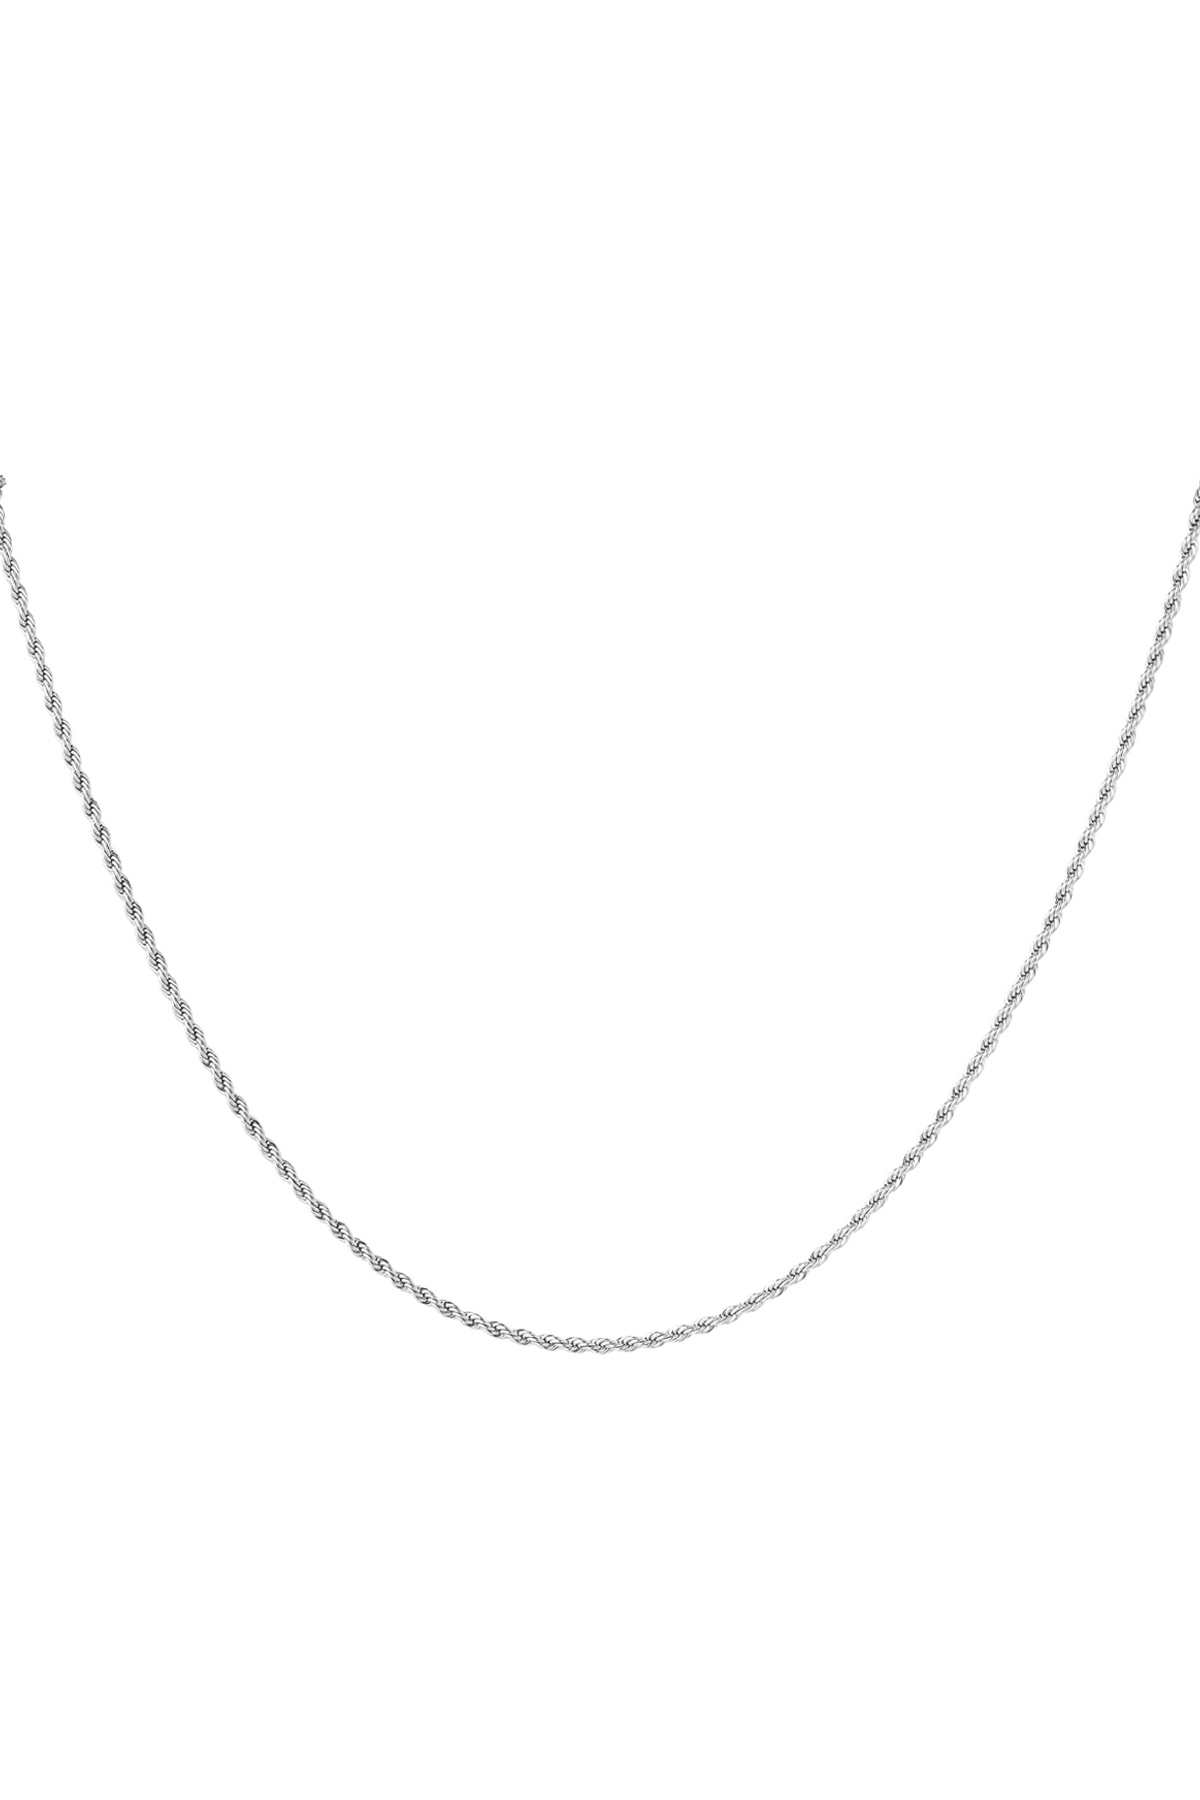 Halskette gedreht dünn - Silber - 2,0MM 